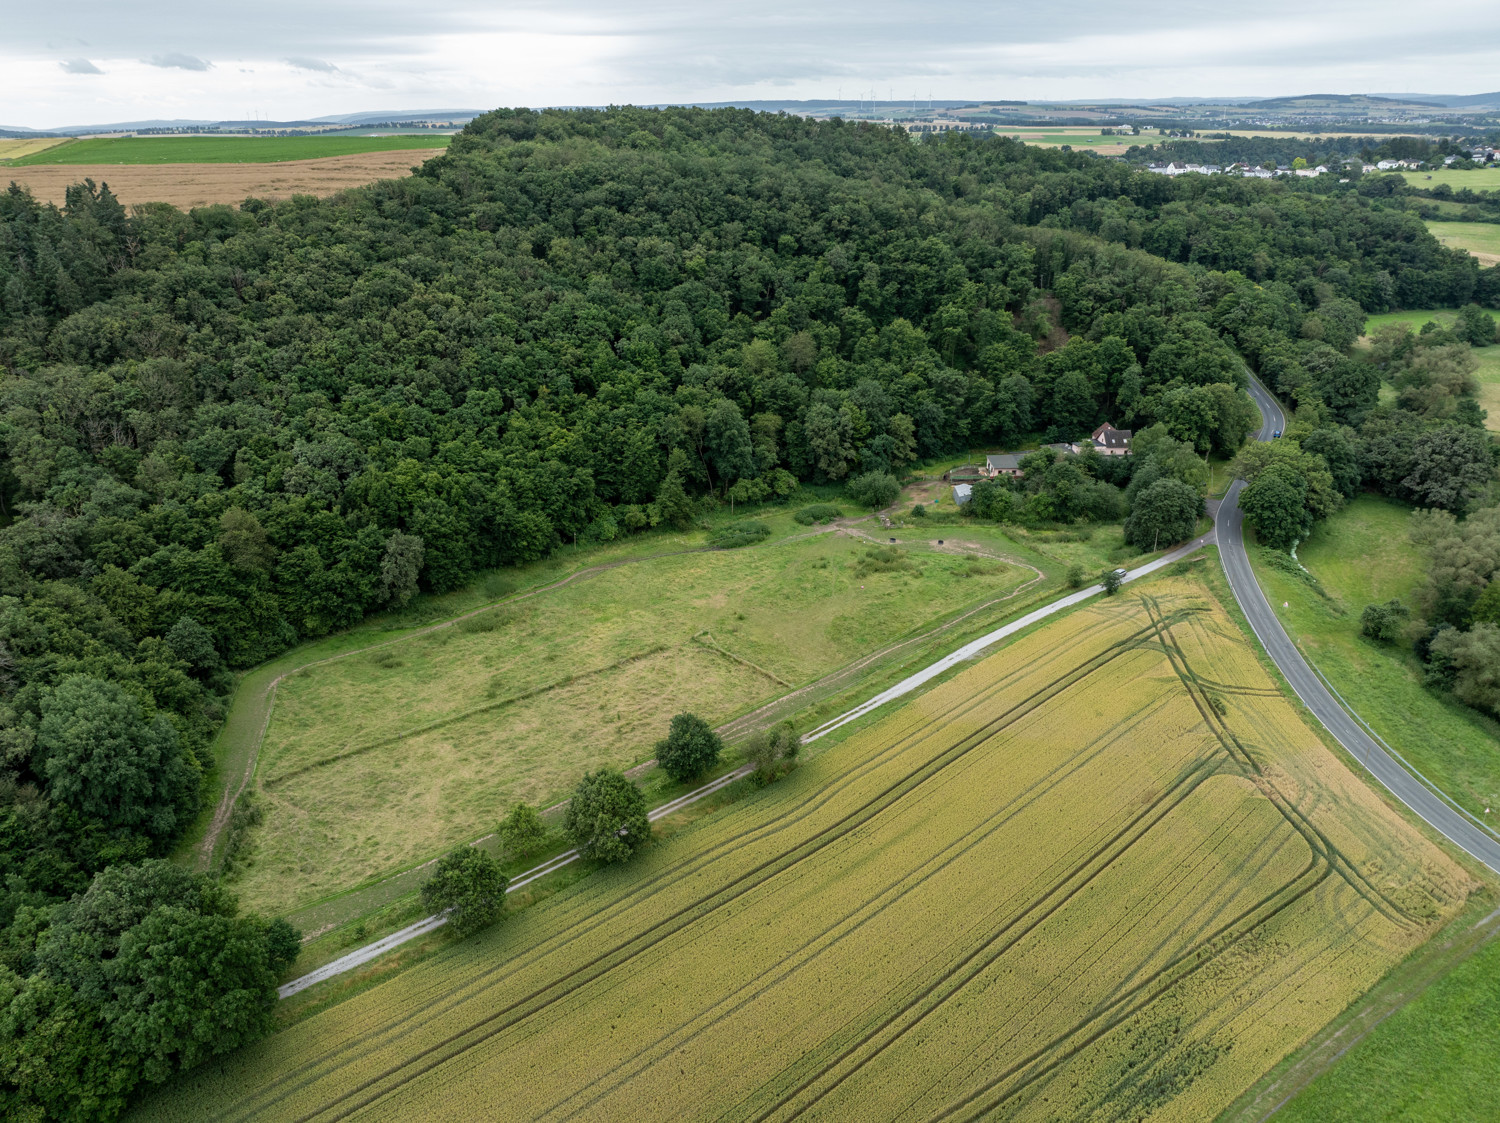 großes Landhaus auf Traumgrundstück in Alleinlage, Weiden, Stall, Pferde- Tierhaltung - Nähe Limburg